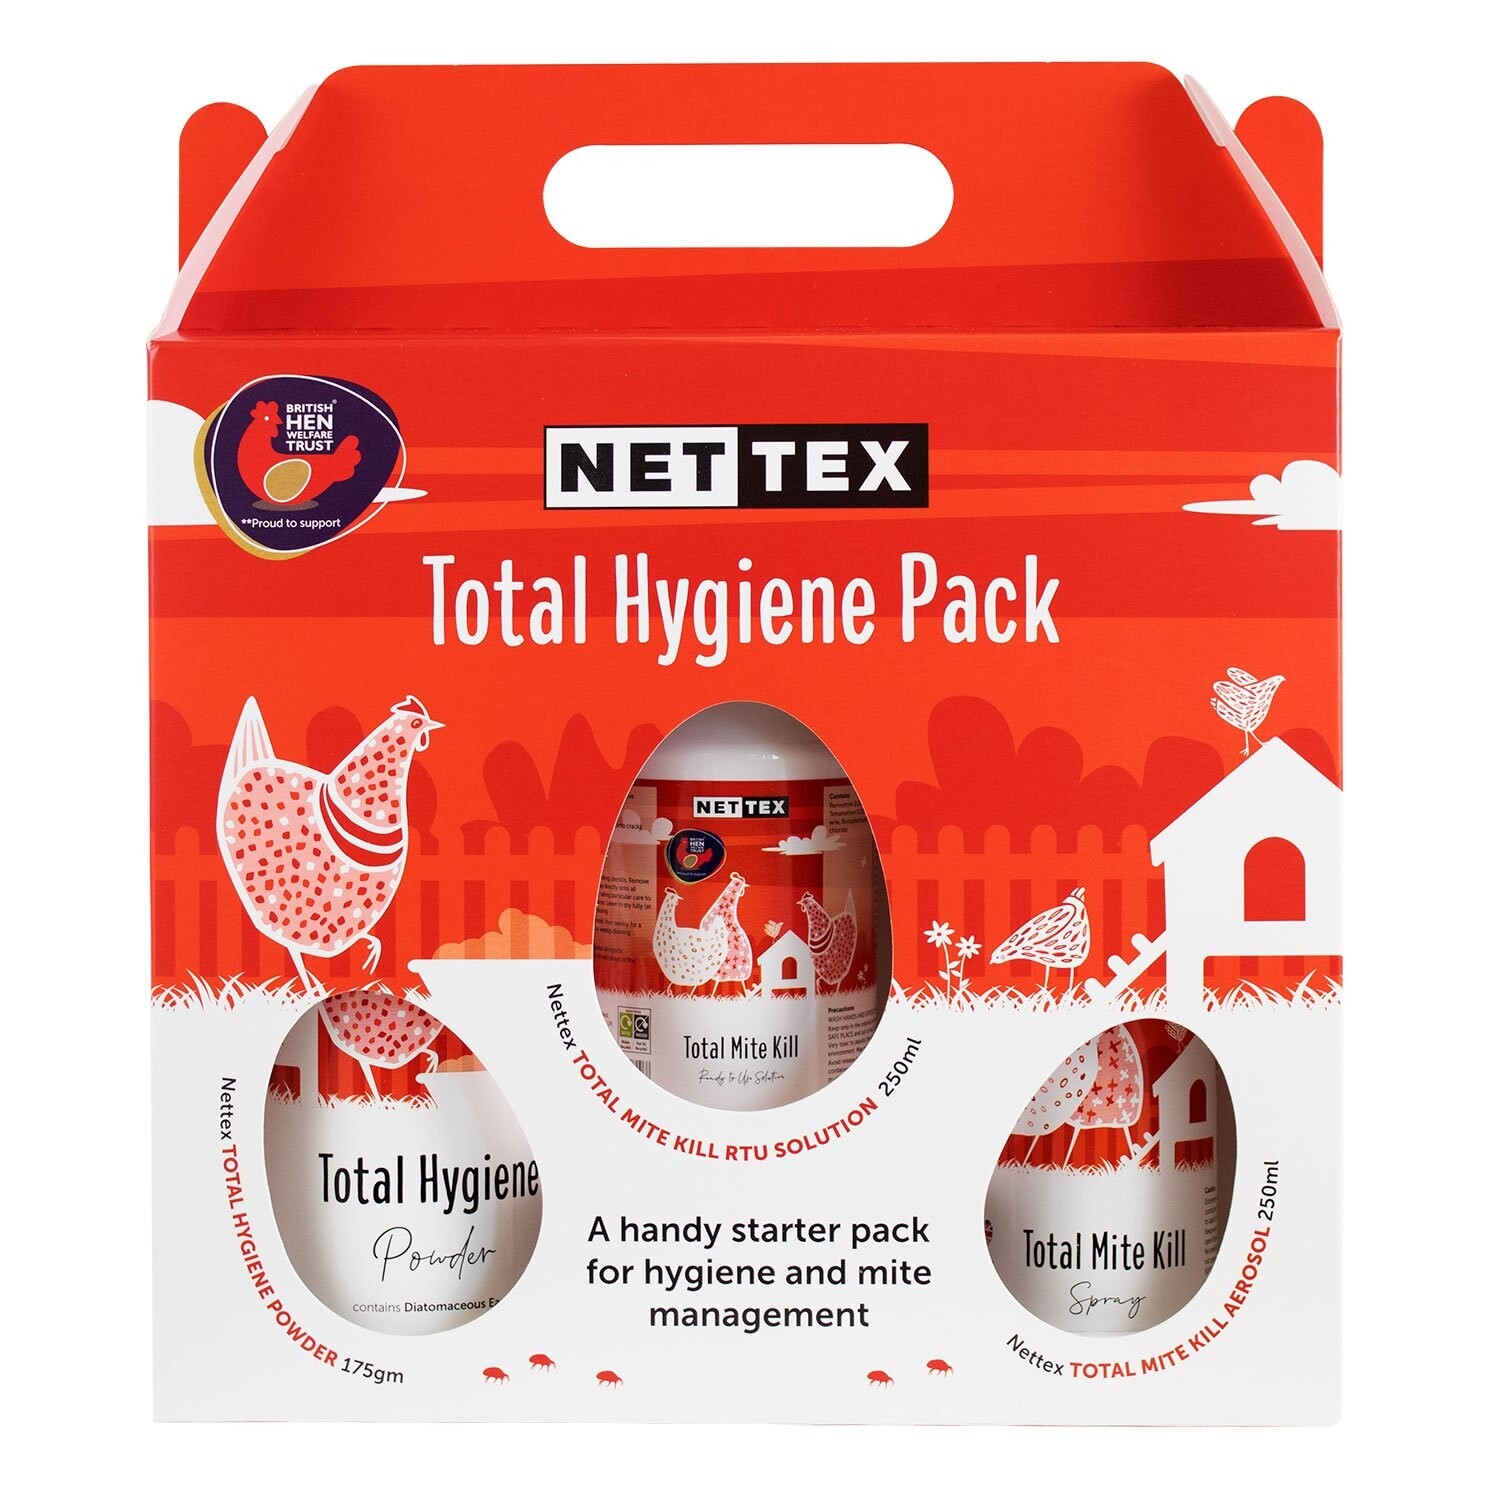 Nettex Total Hygiene Promo Pack*